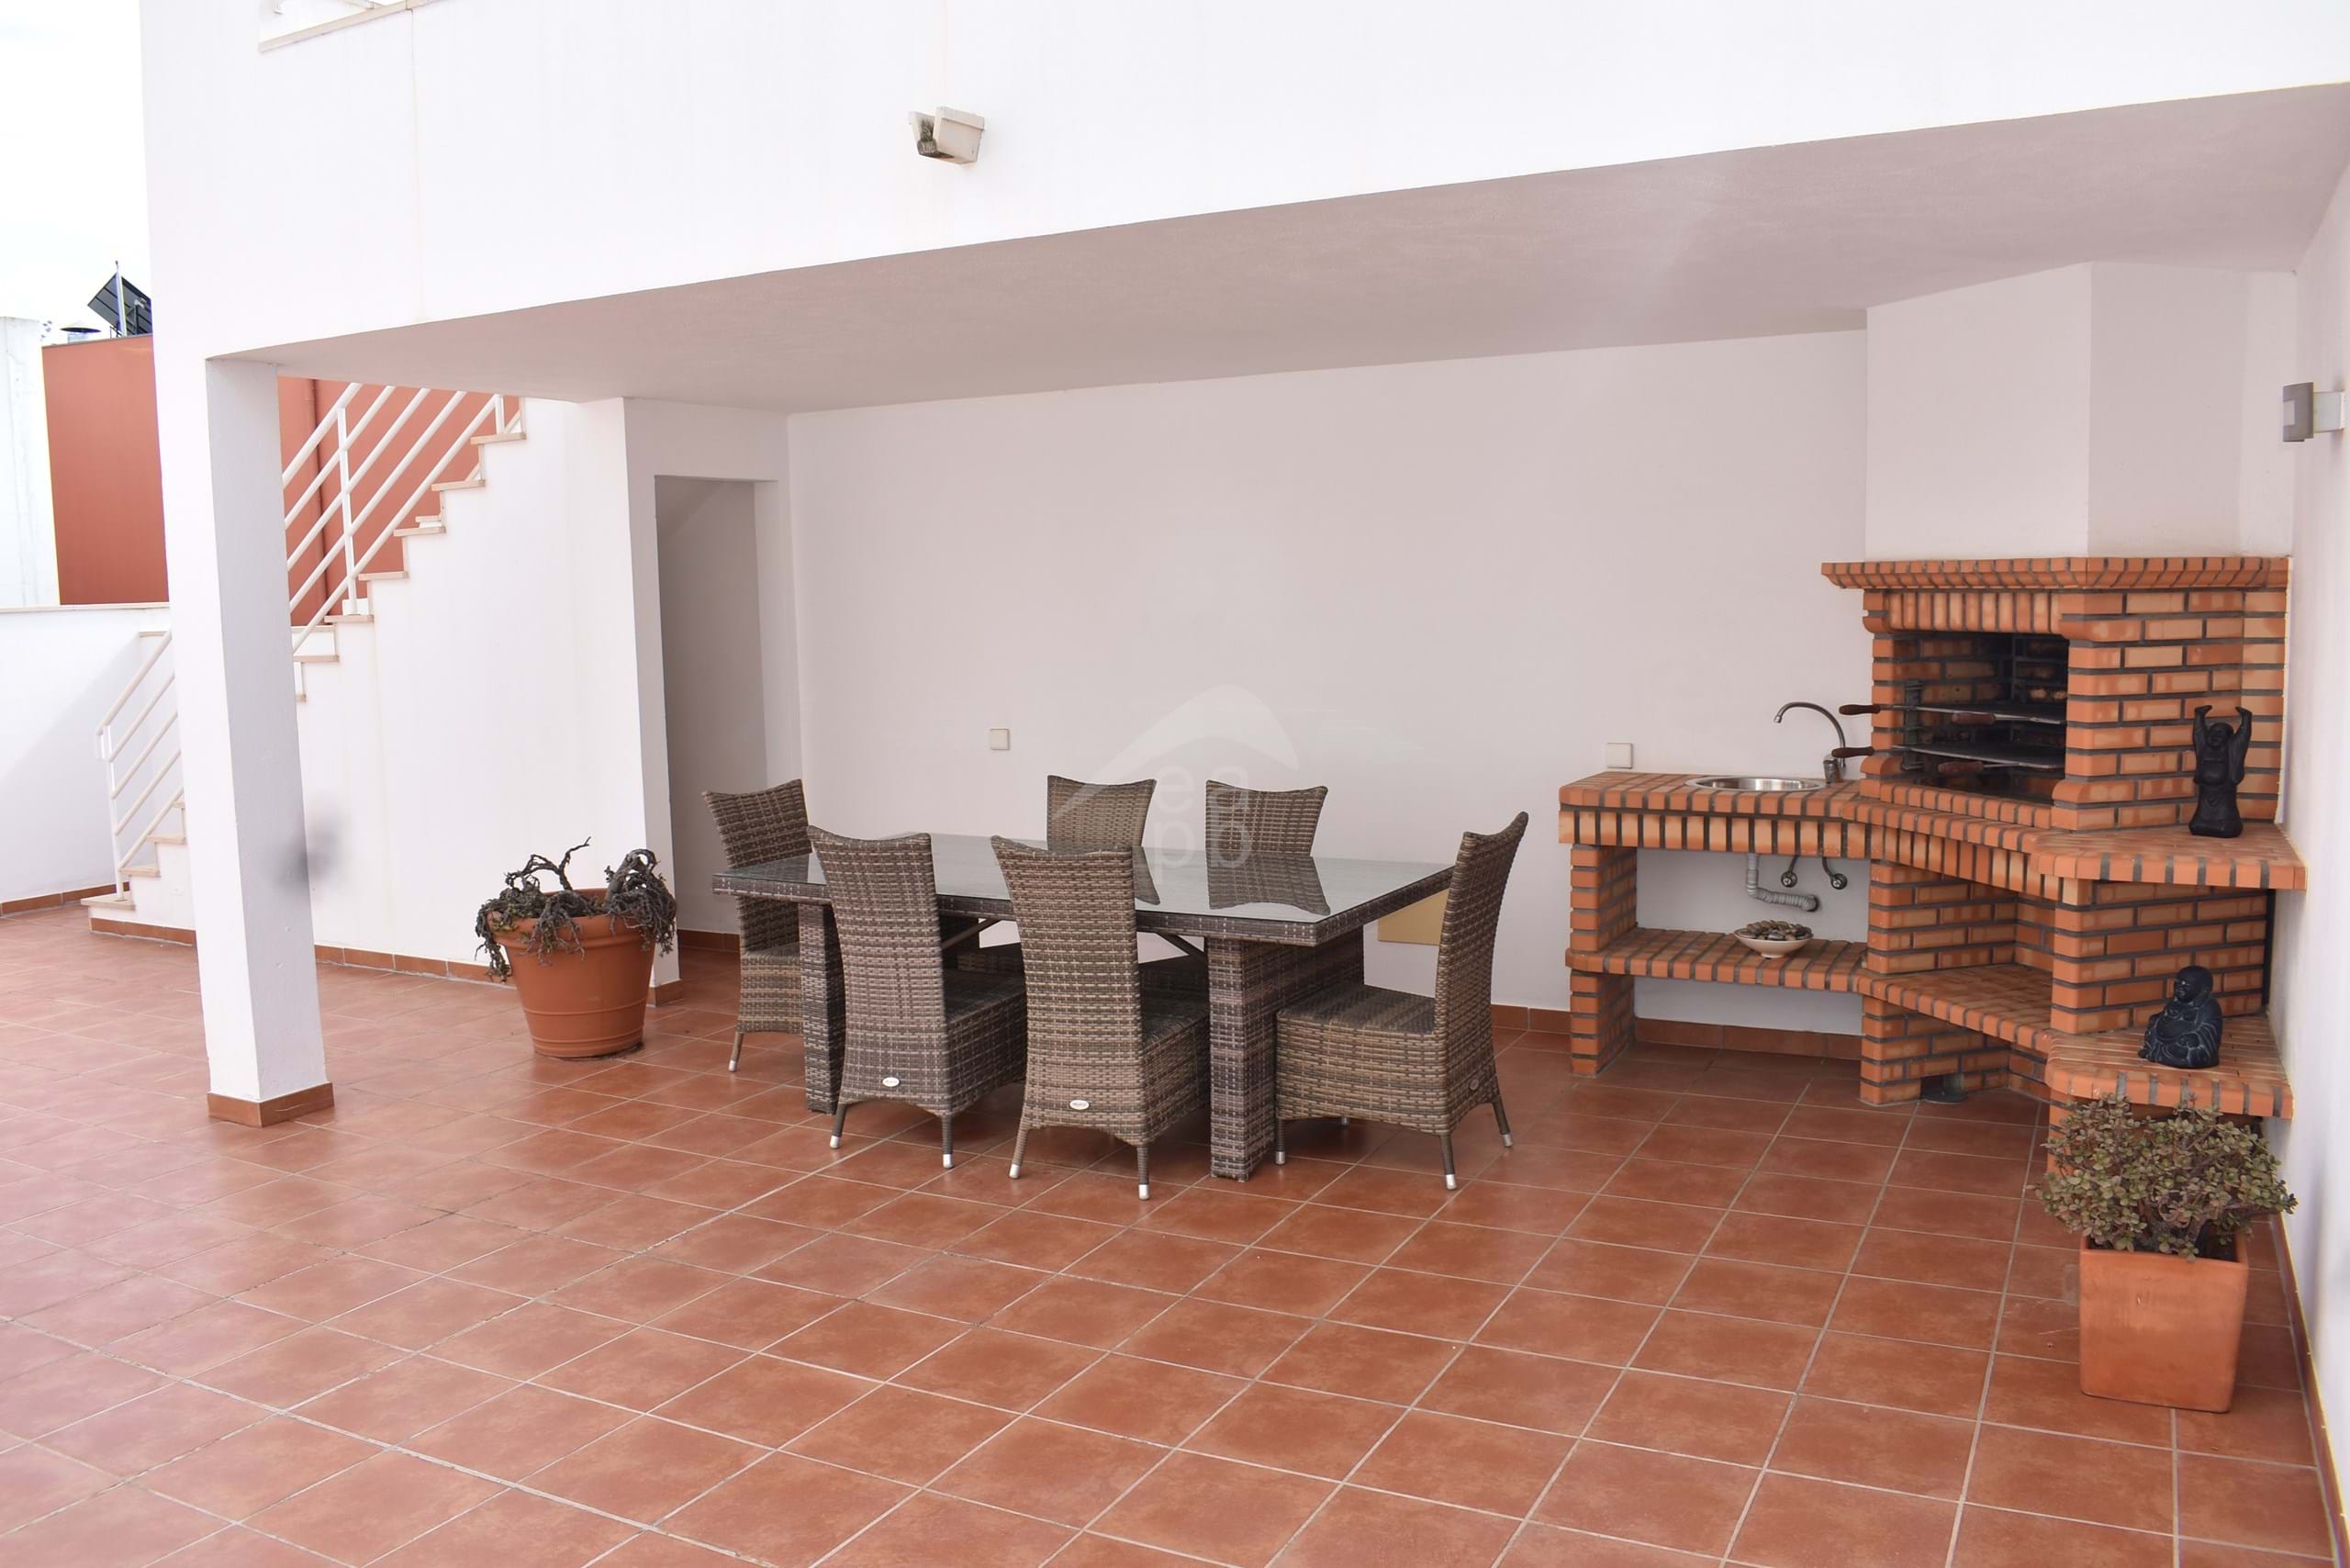 Soberba moradia T3+1 com excelentes terraços e ampla garagem em Tavira!